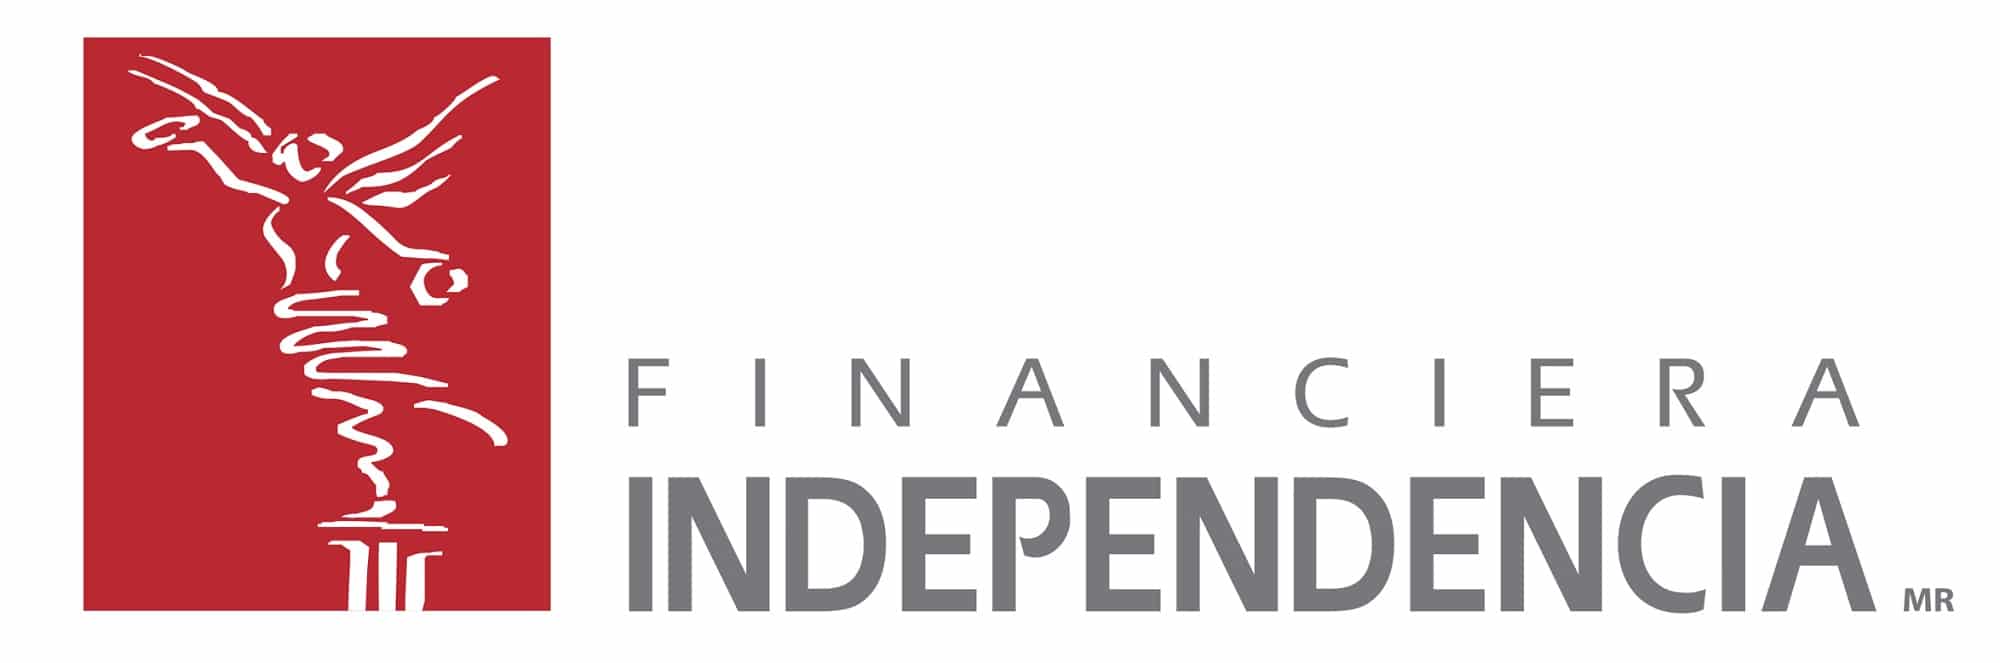 estado de cuenta de financiera independencia